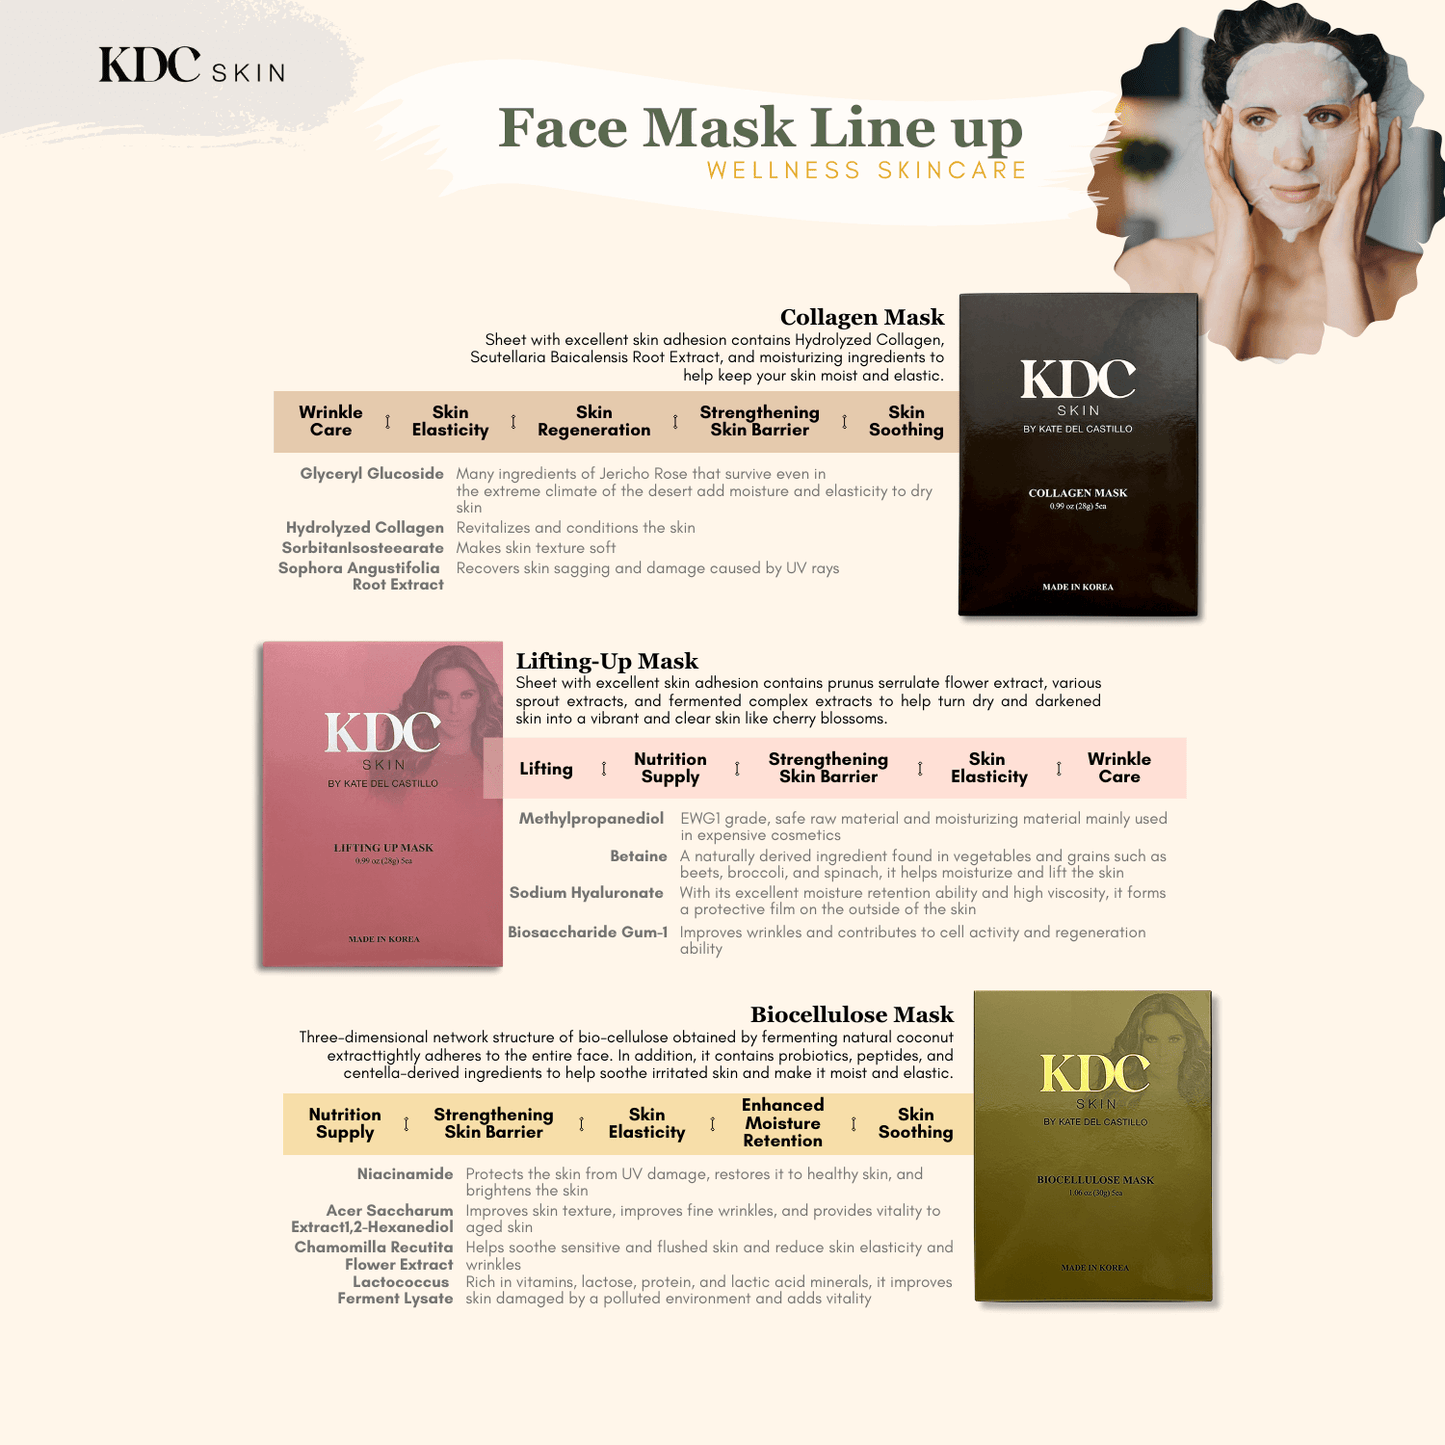 KDC Skin-Cooling Face Mask